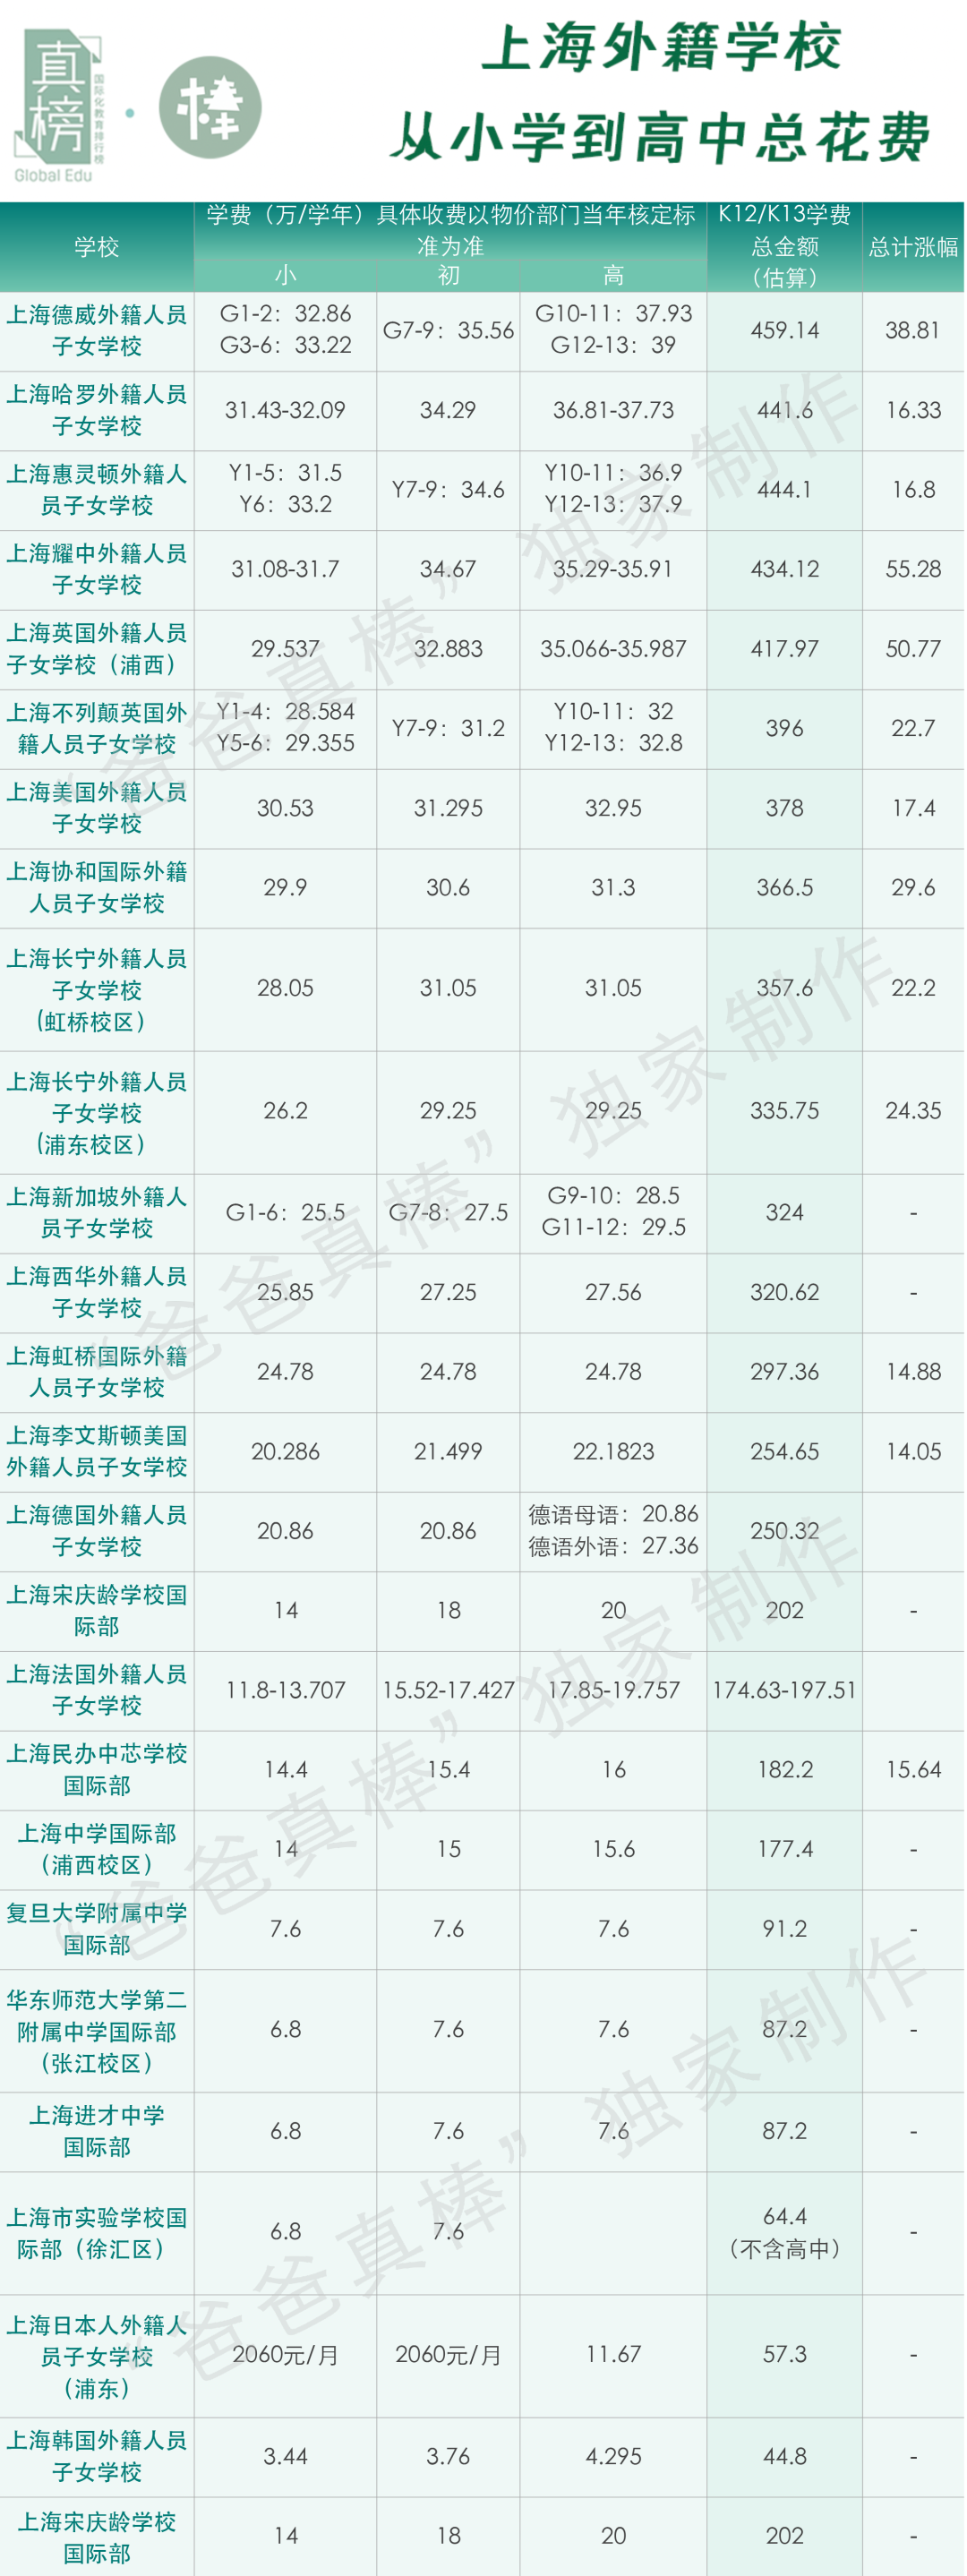 卖掉上海一套房供不起读国际学校的娃魔都国际校学费涨破450万